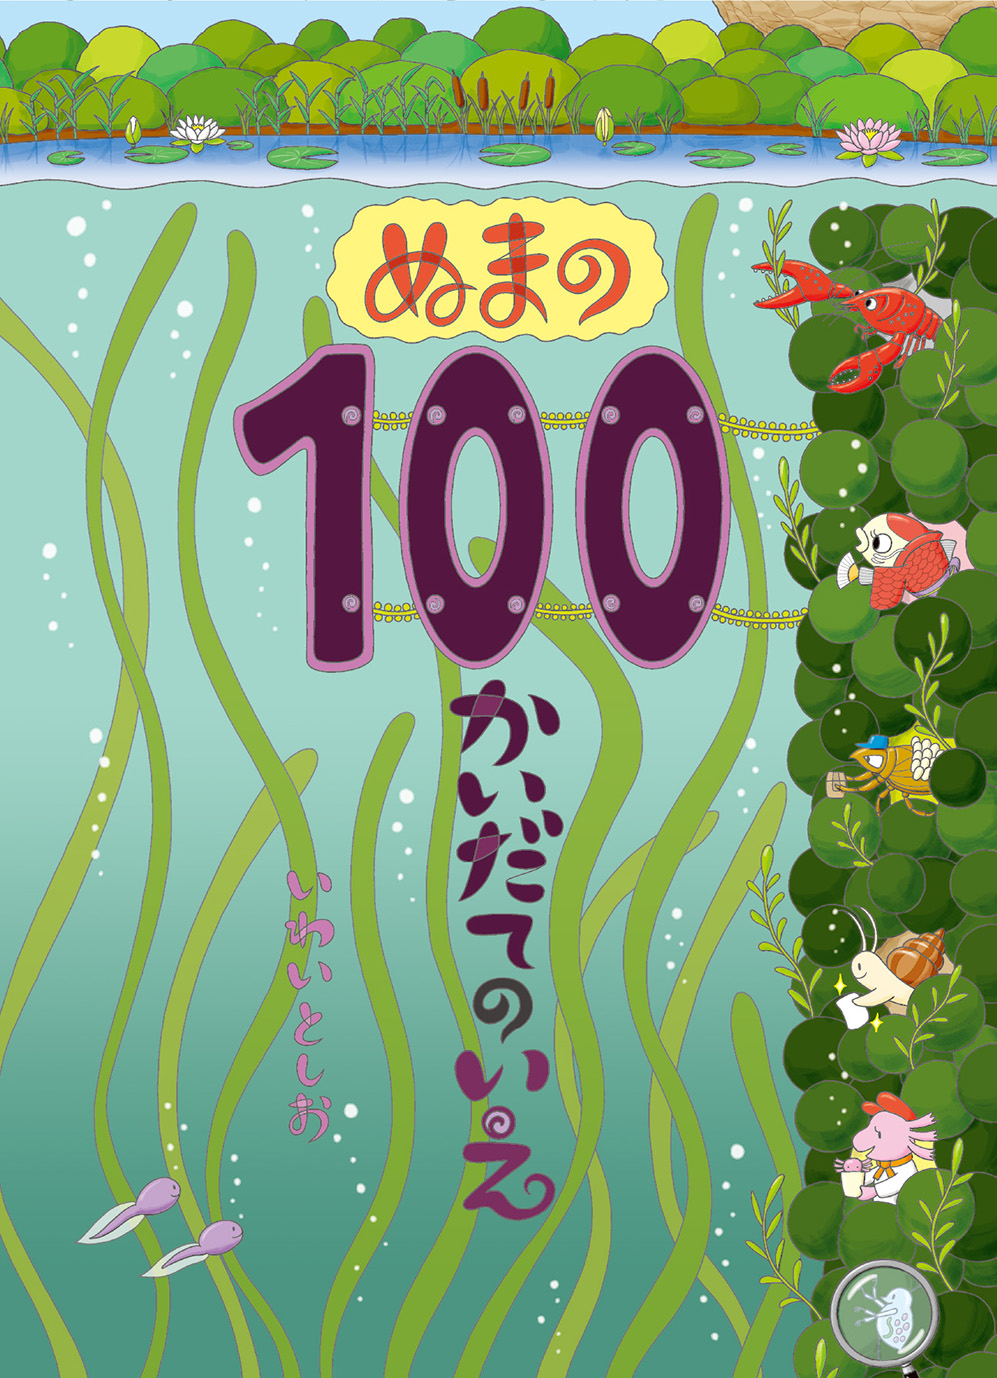 10/22 日本海新聞で『ぬまの100かいだてのいえ』が紹介されました